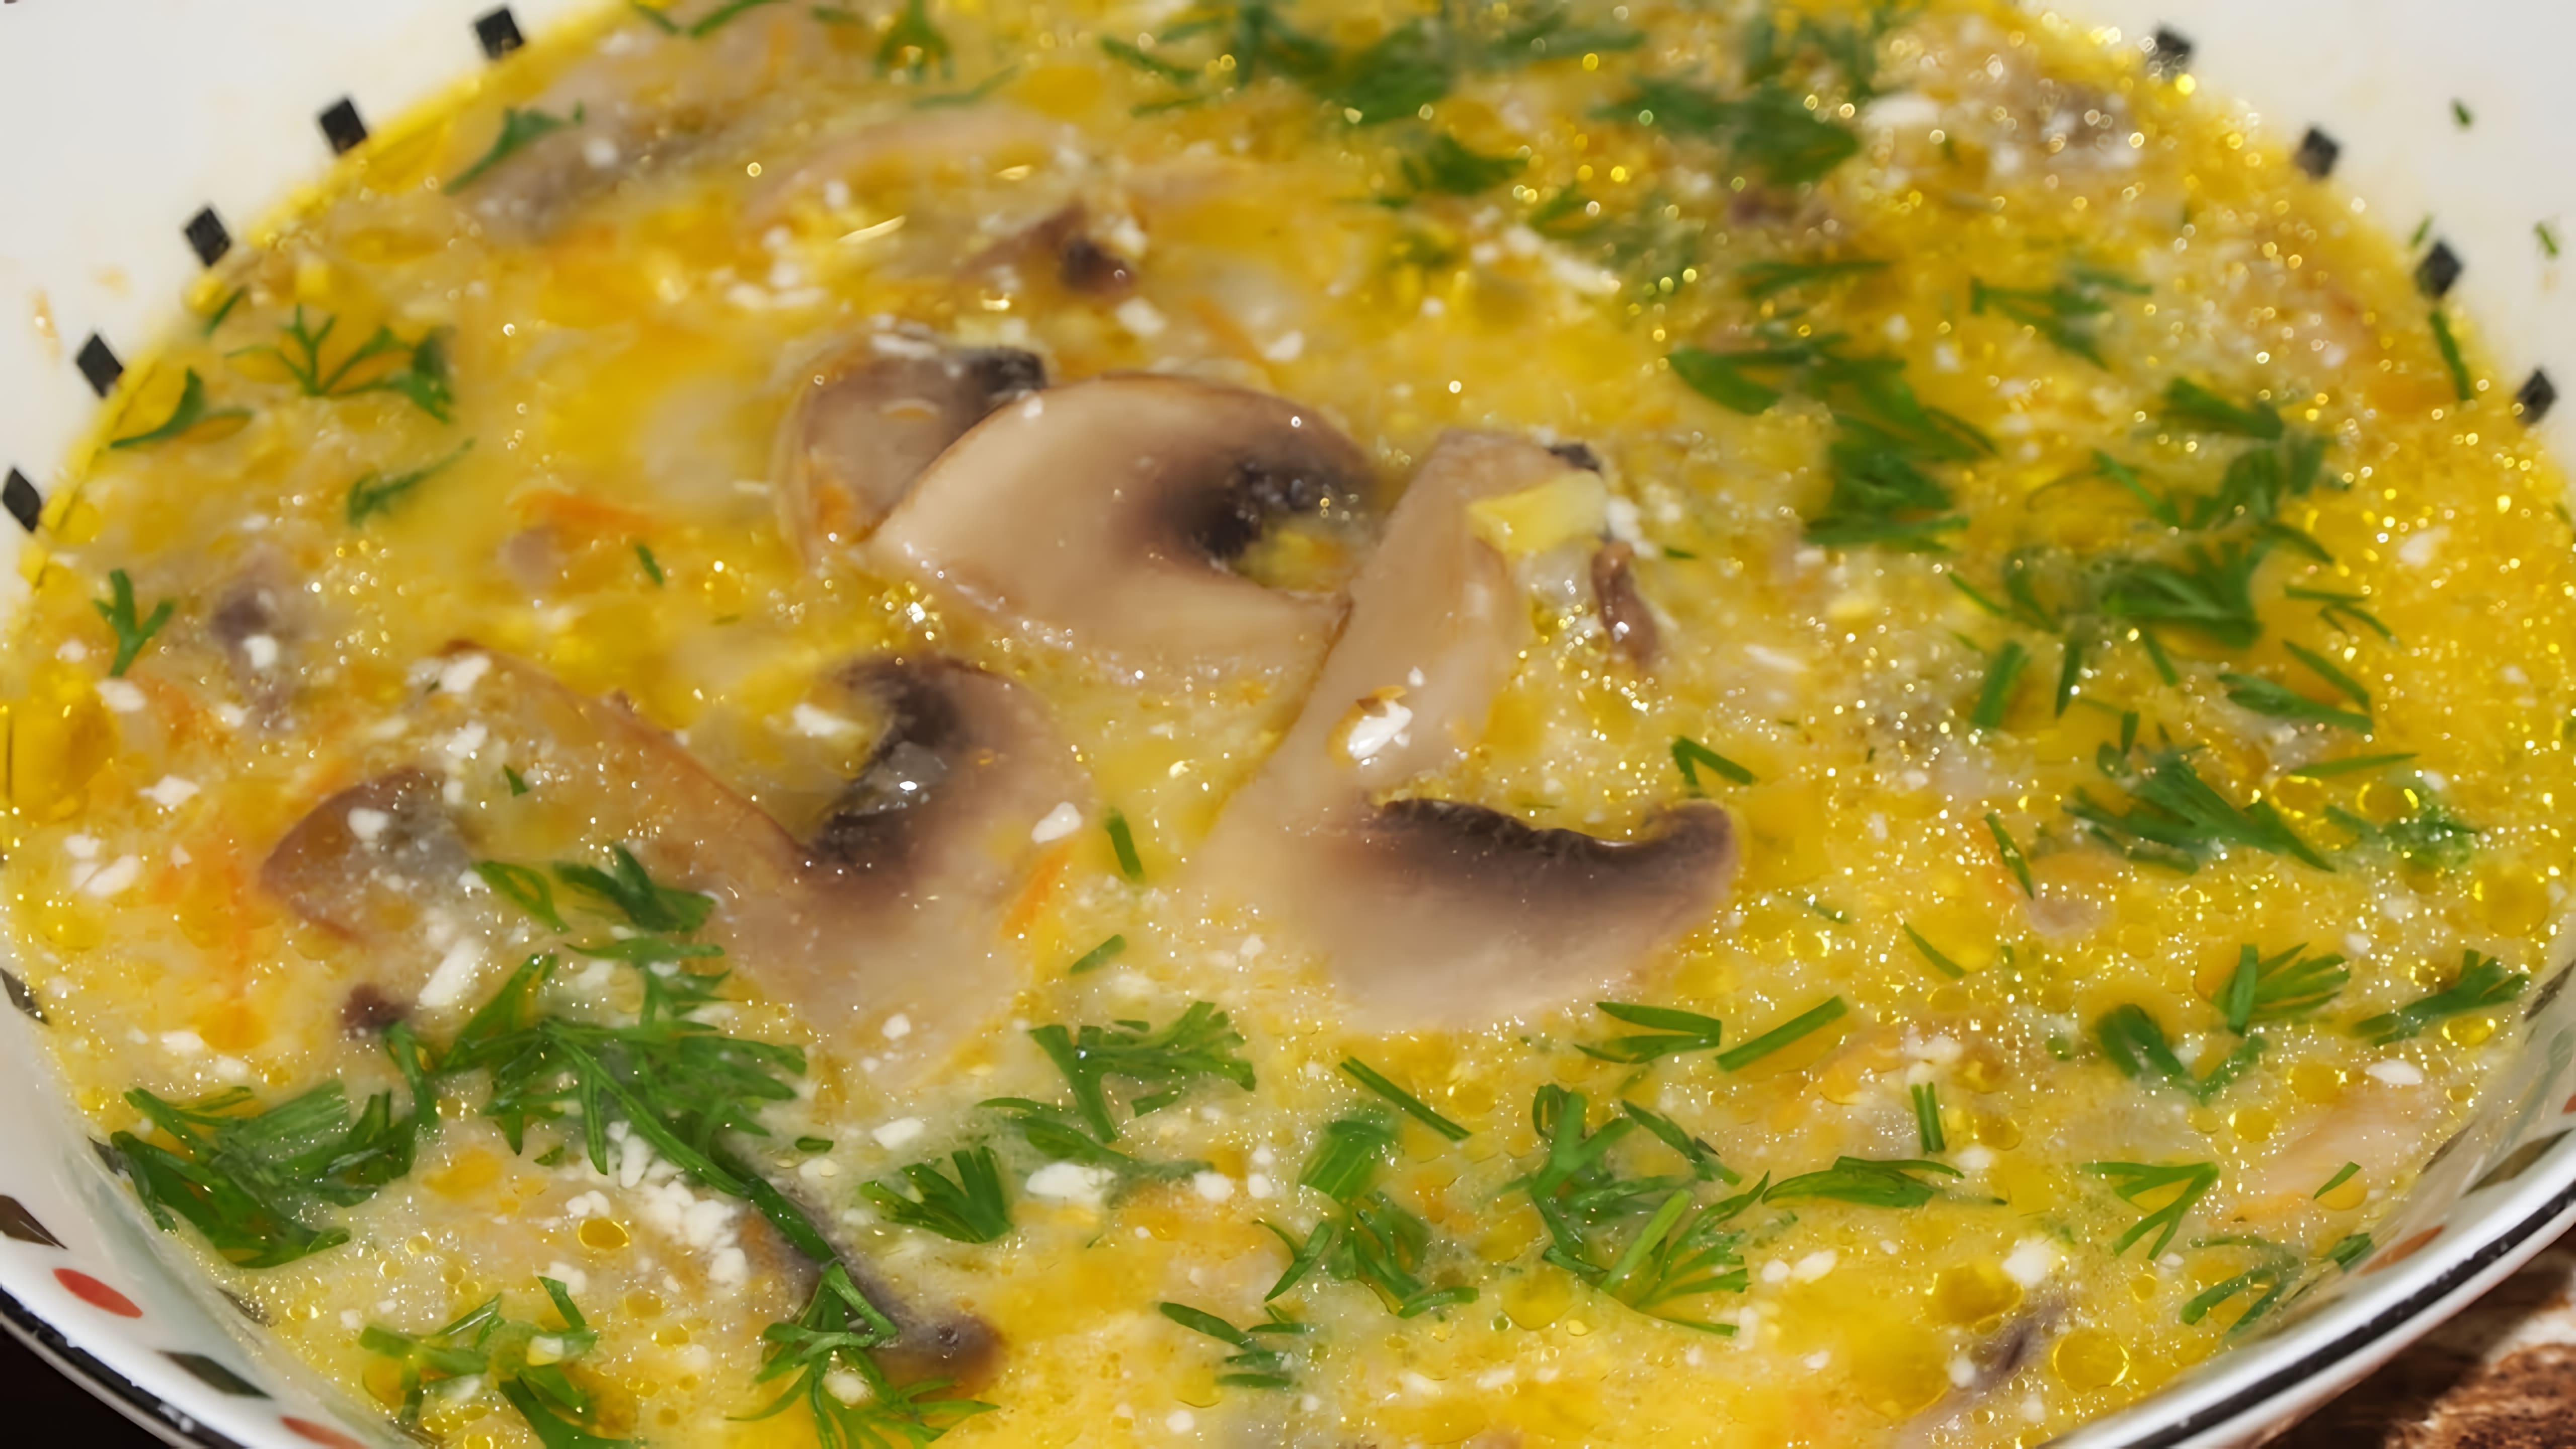 В этом видео демонстрируется процесс приготовления супа жюльен